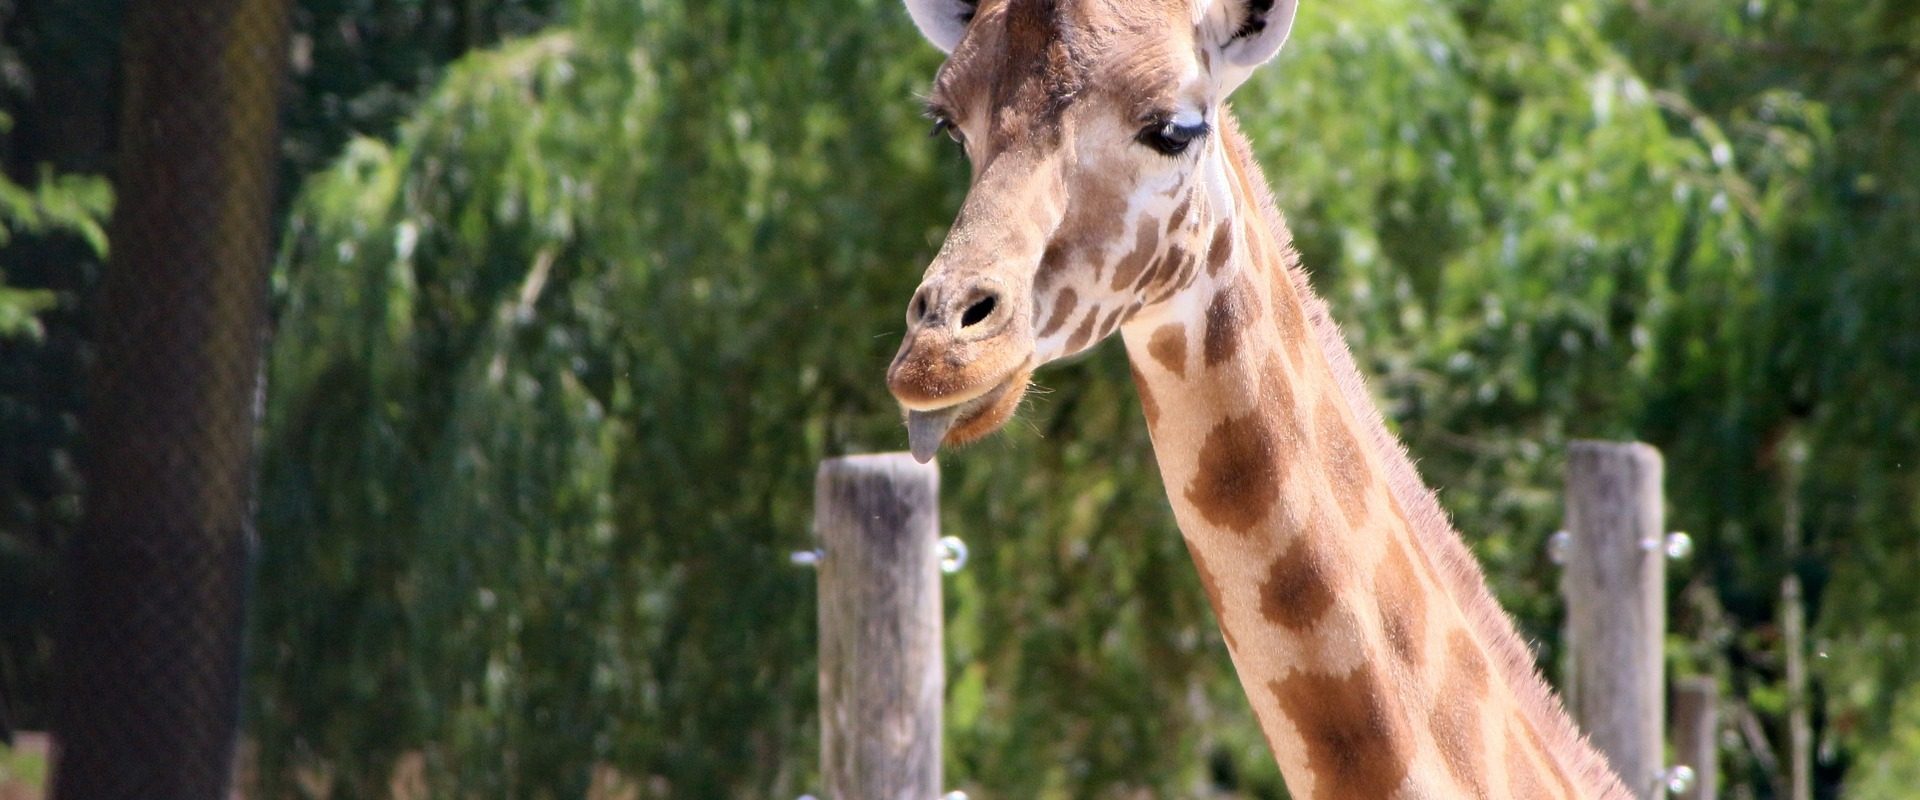 girafe au zoo